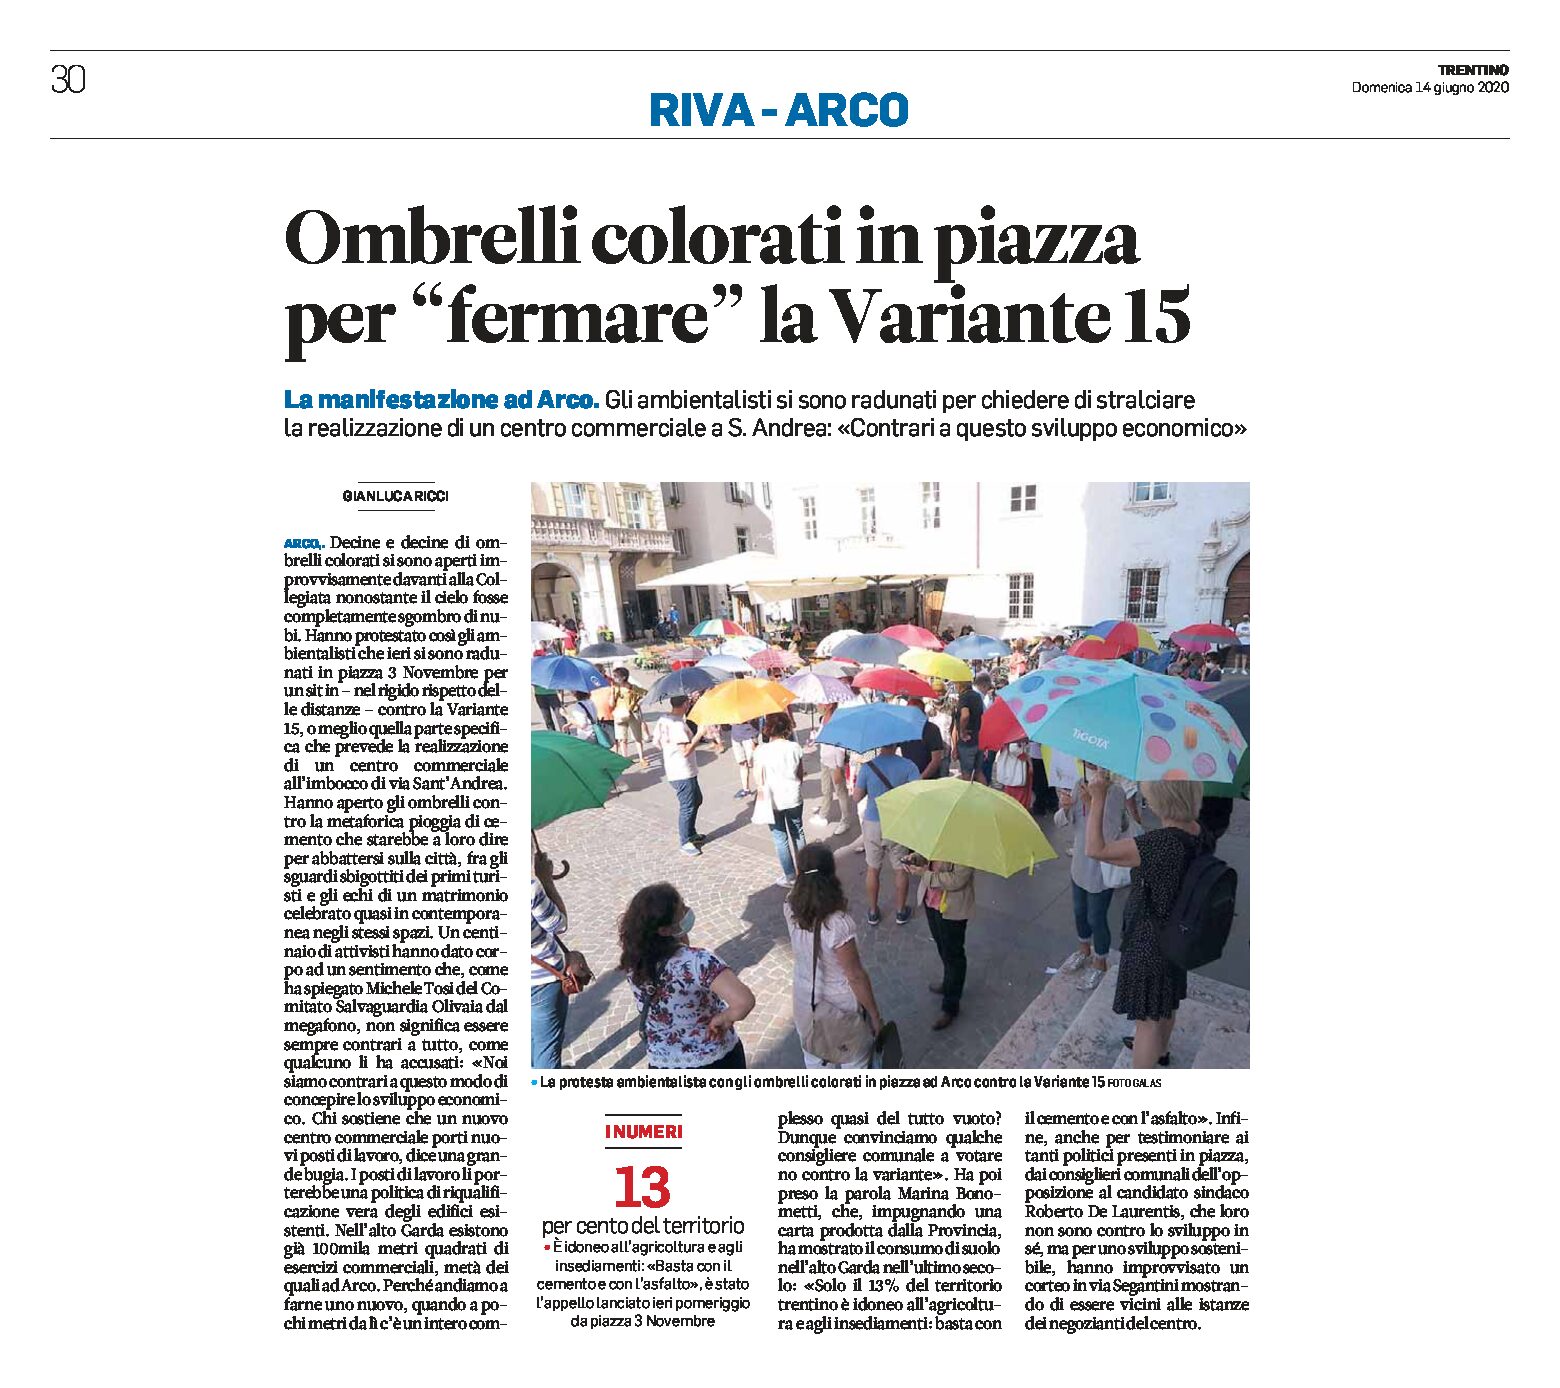 Arco: ombrelli colorati in piazza per “fermare” la variante 15